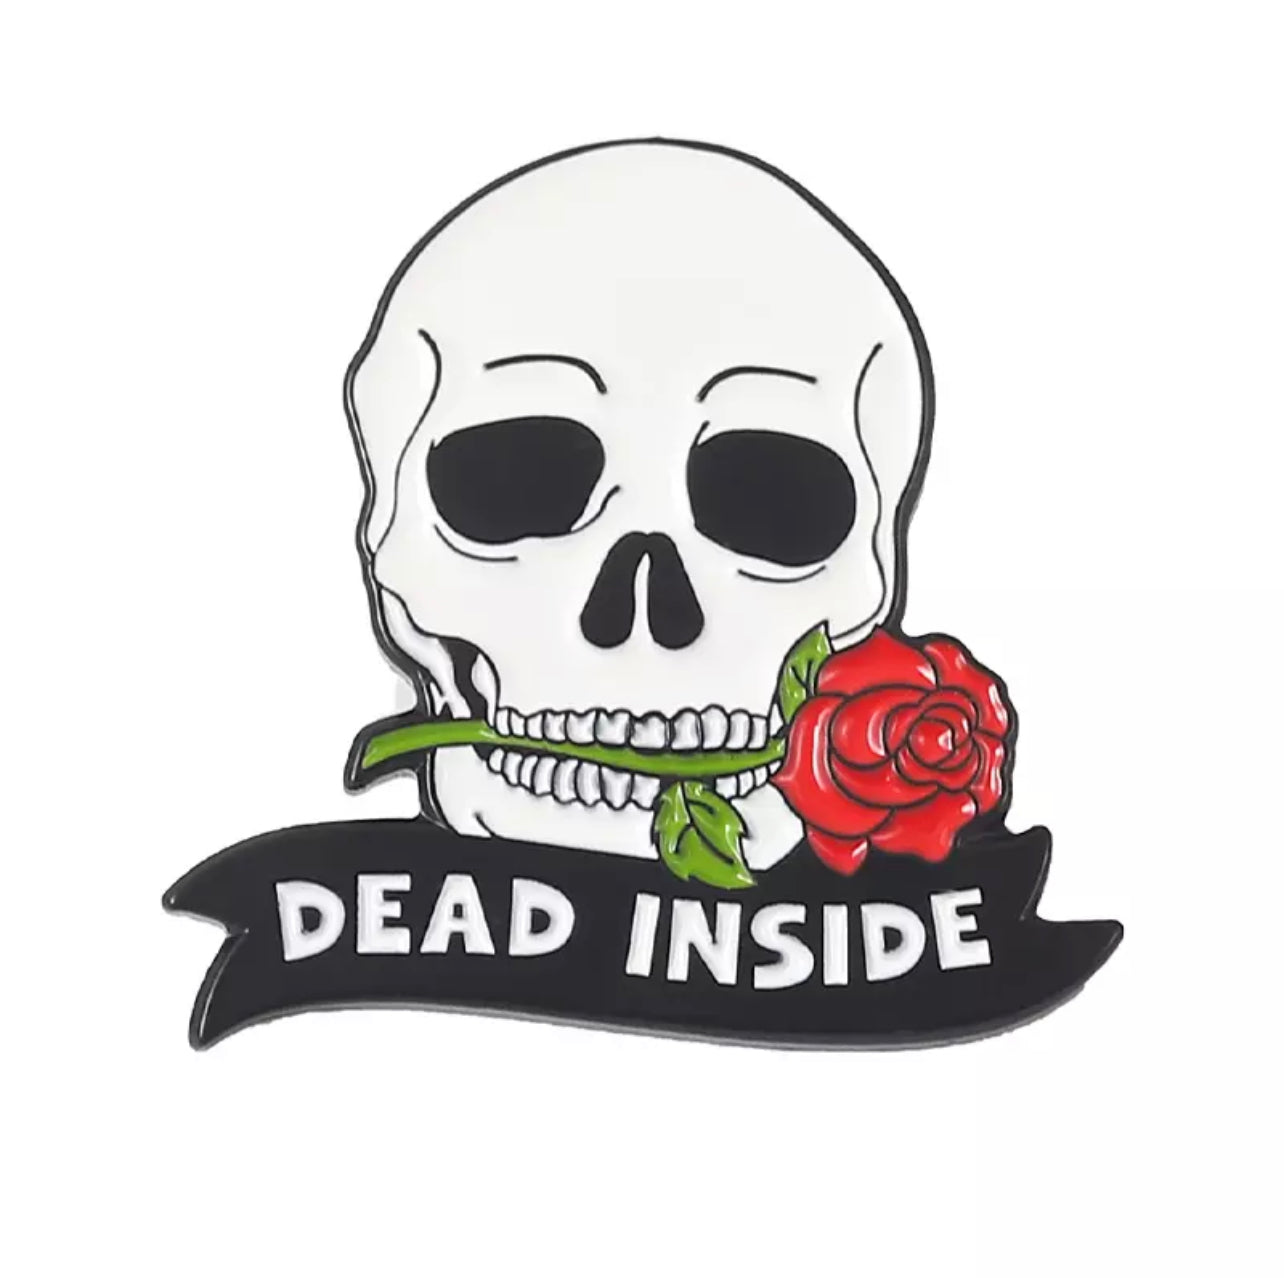 Dead inside